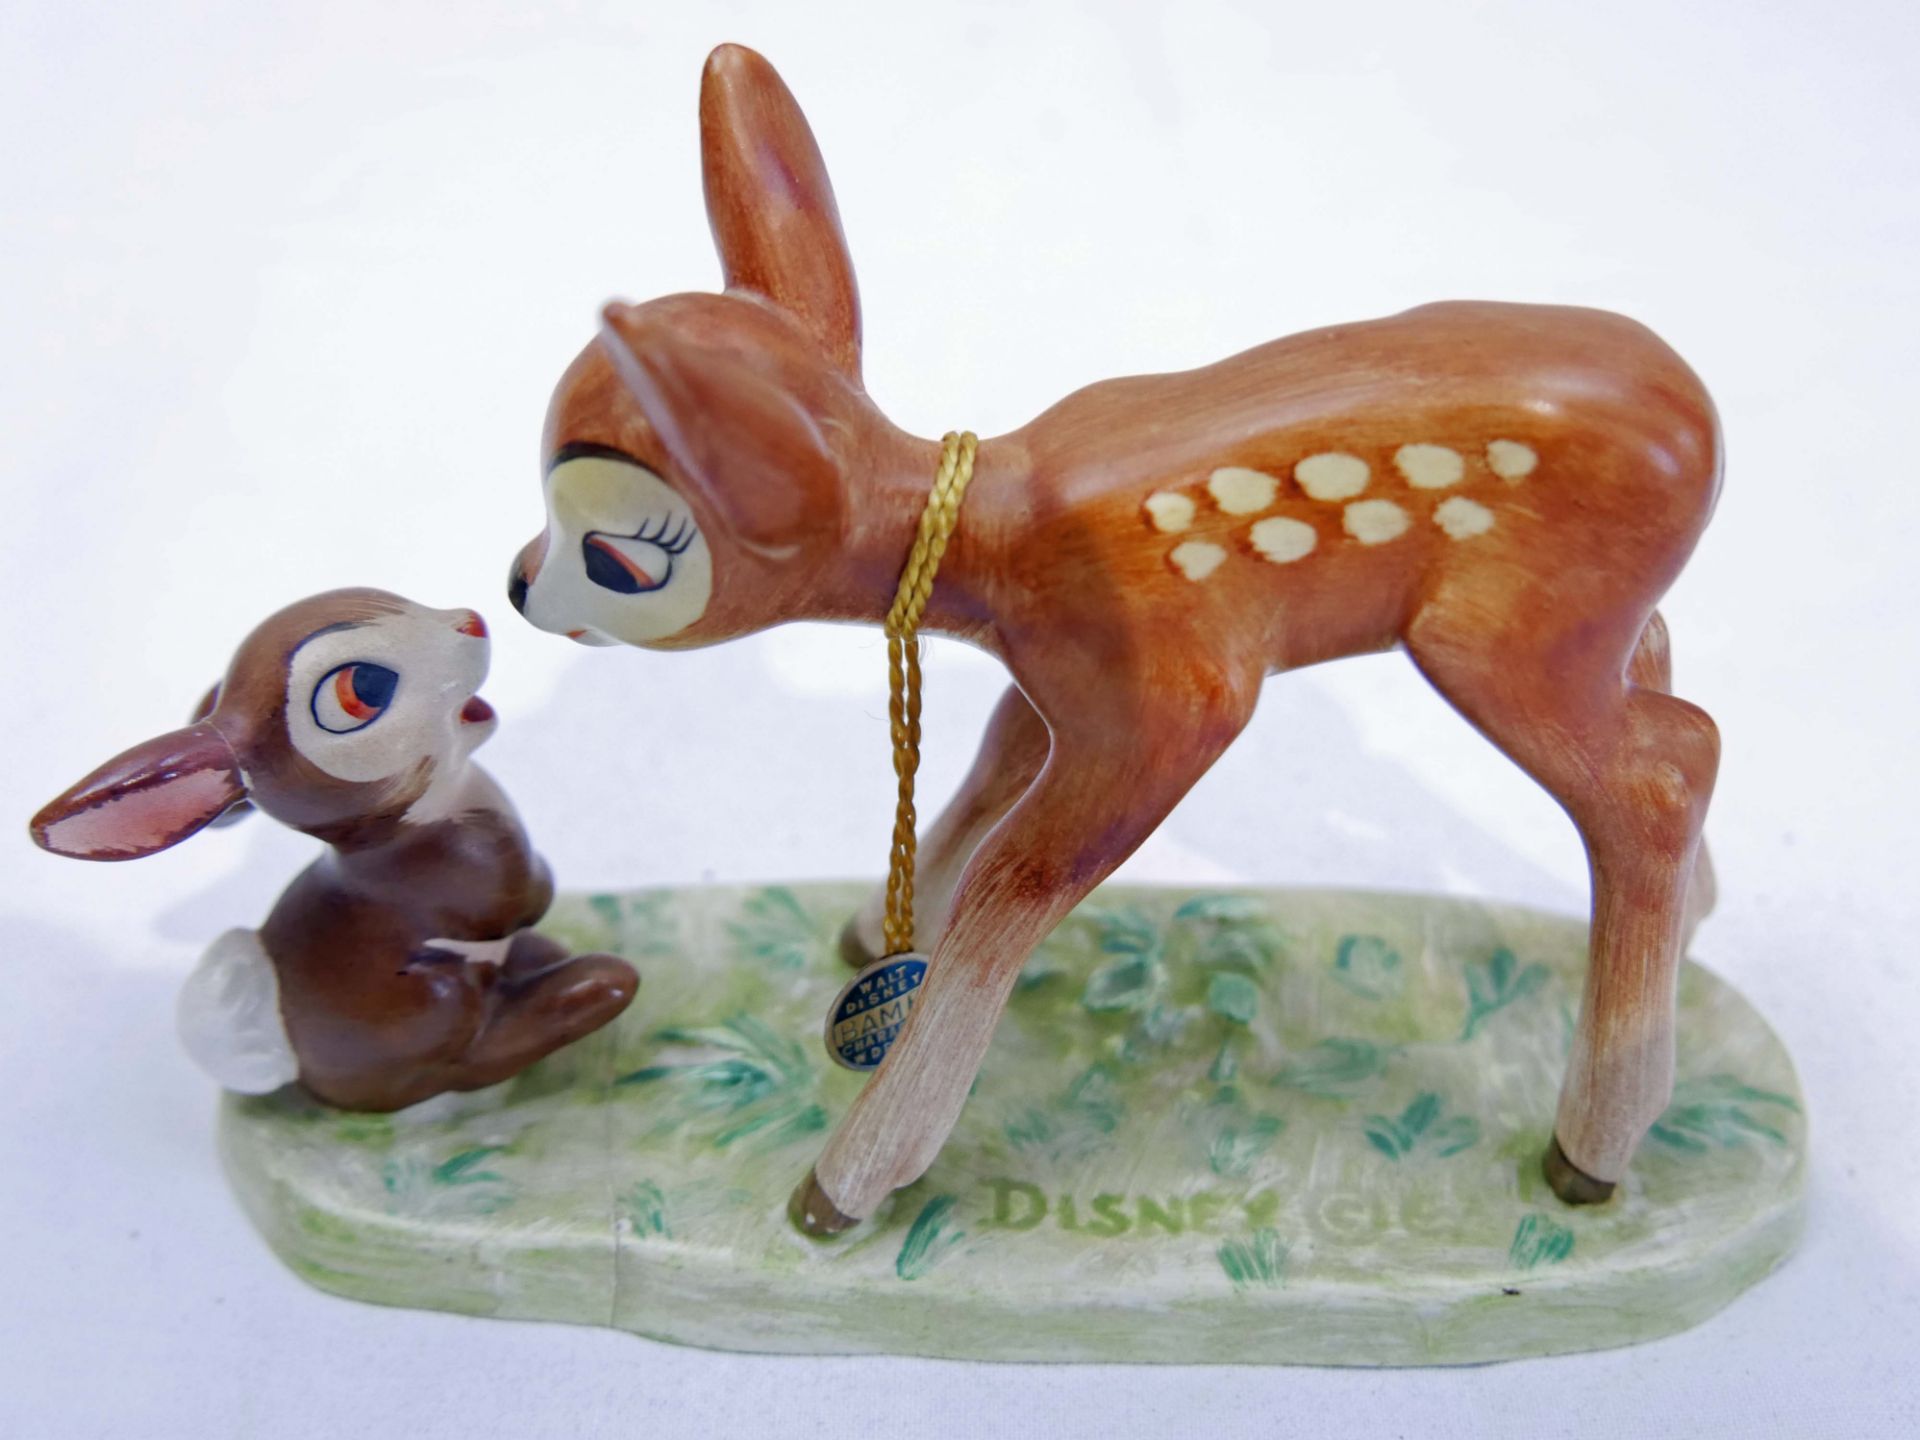 Goebel Porzellanfigur "Bambi & Klopfer", Bodenplatte gerissen und geklebt (nicht störend). Länge ca. - Bild 2 aus 3